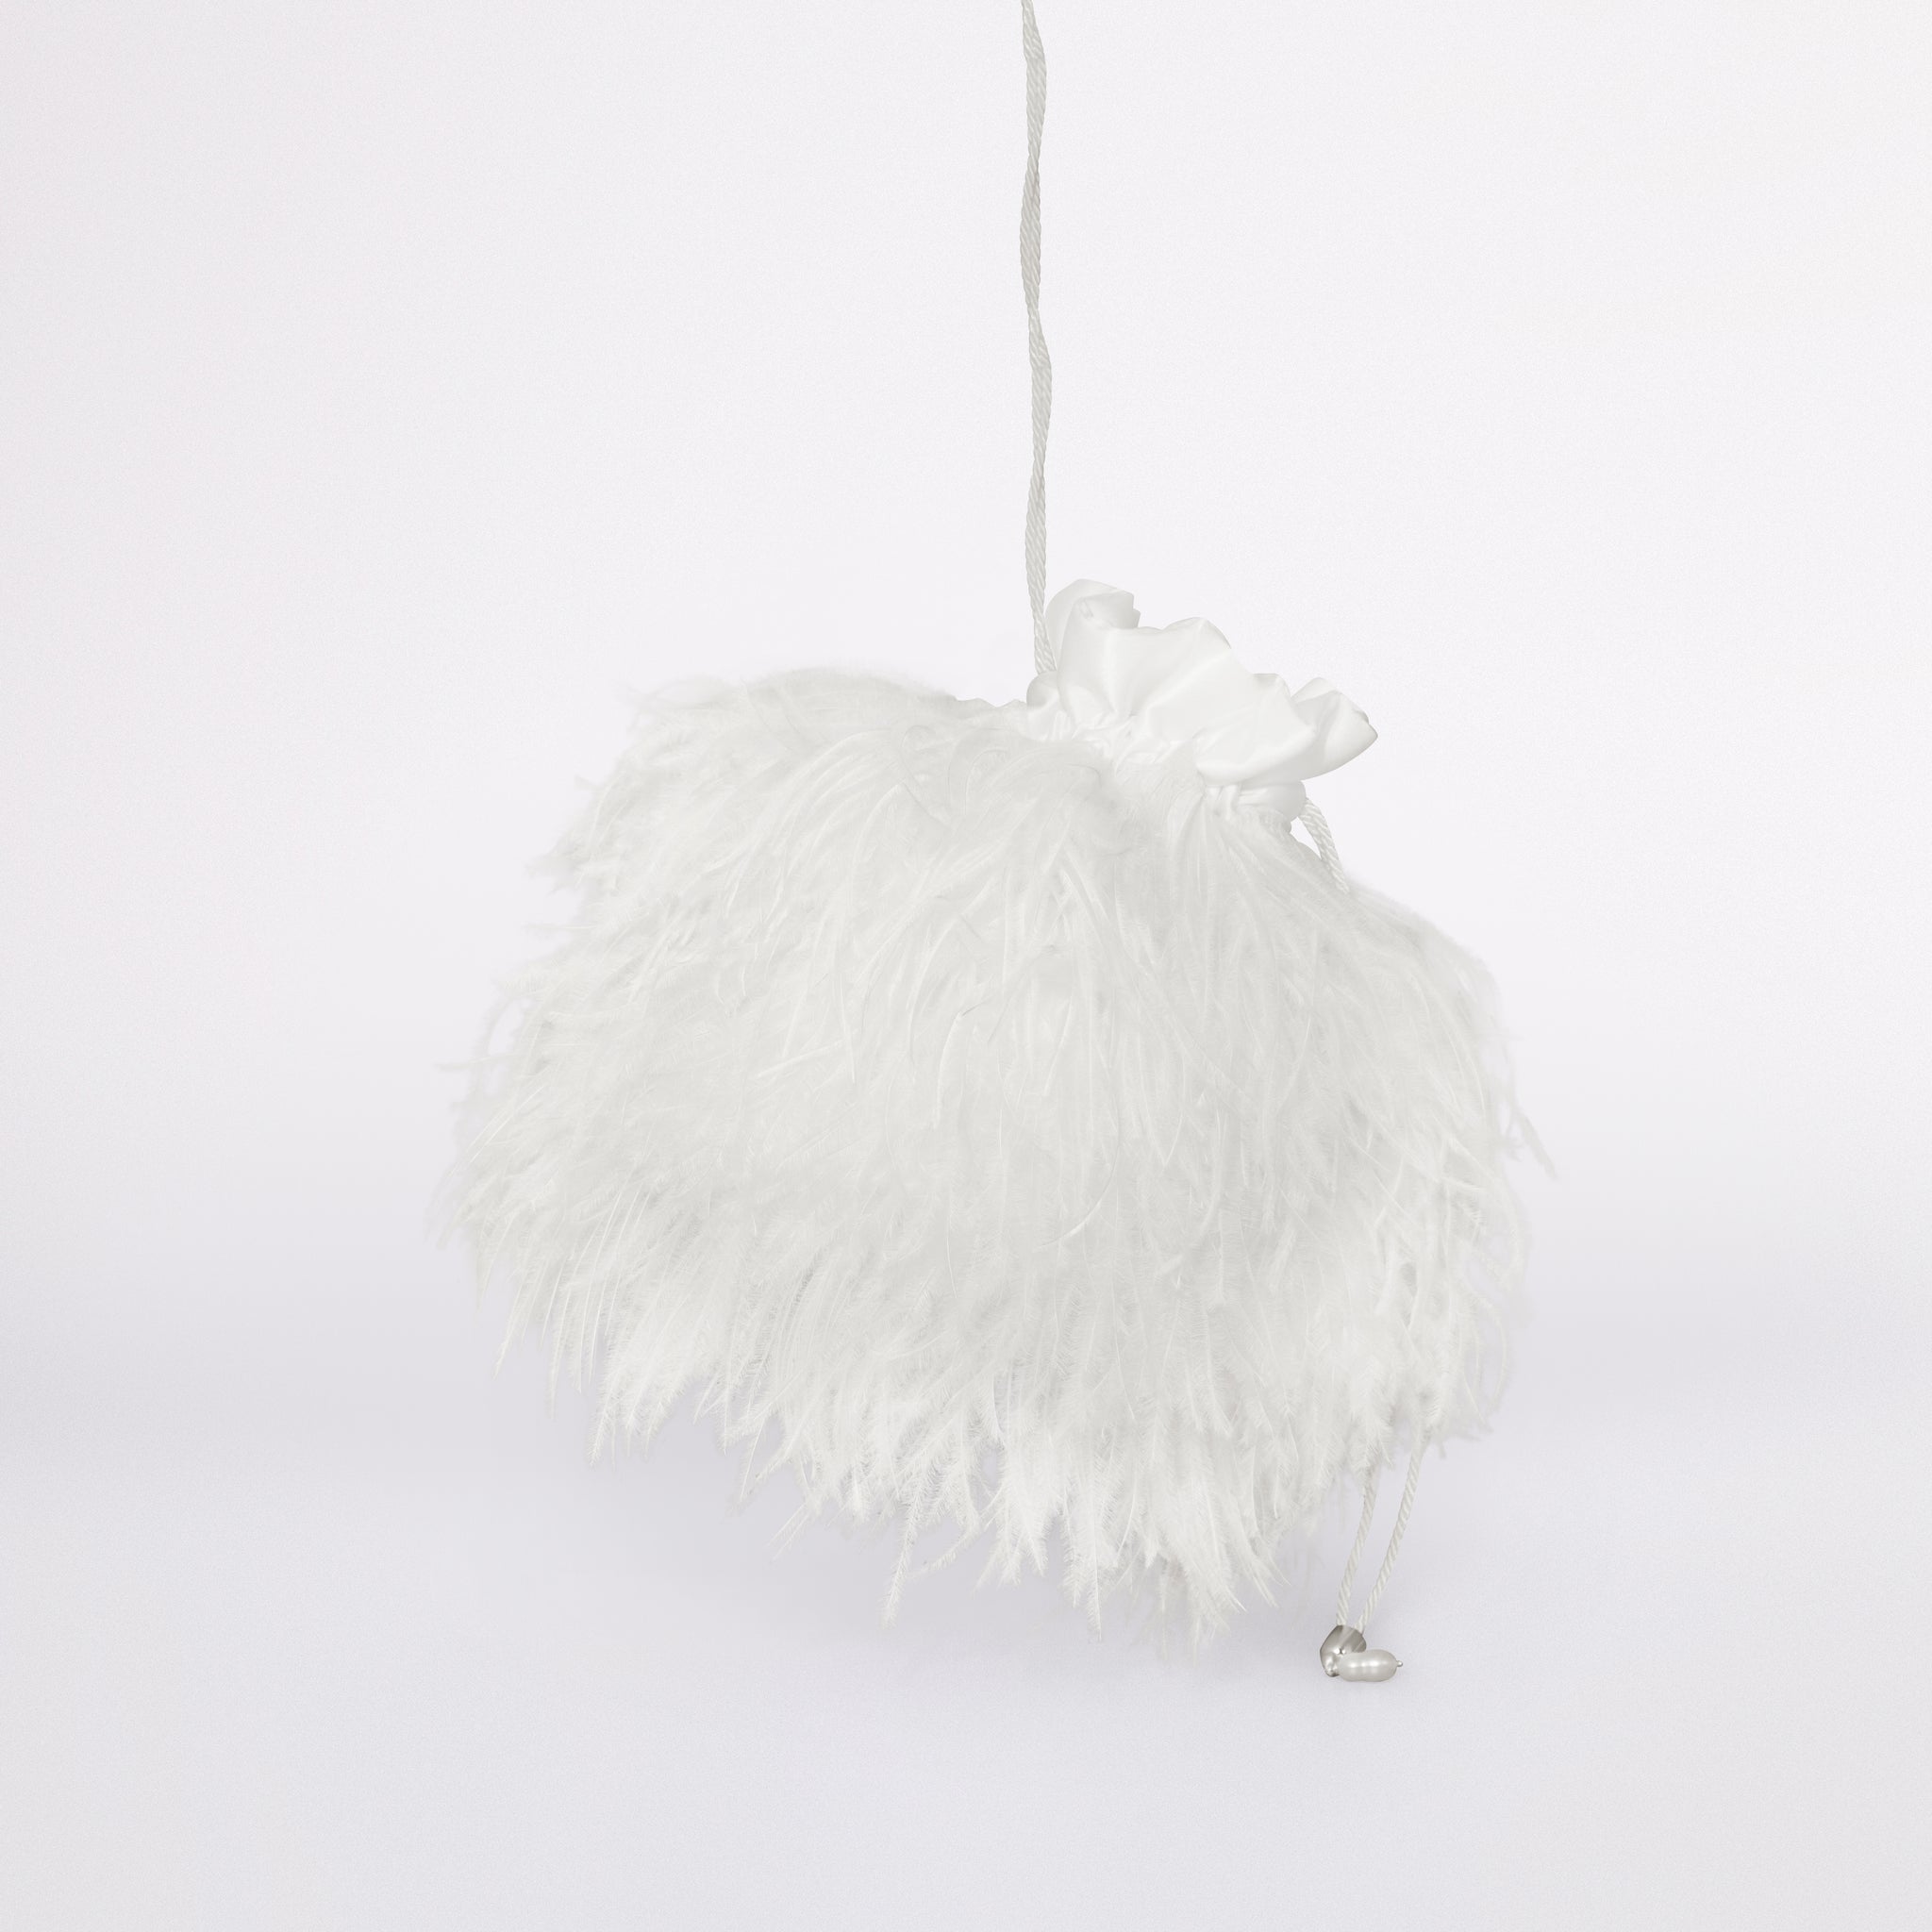 La Feathers bag in versione Love Collection in colorazione bianco